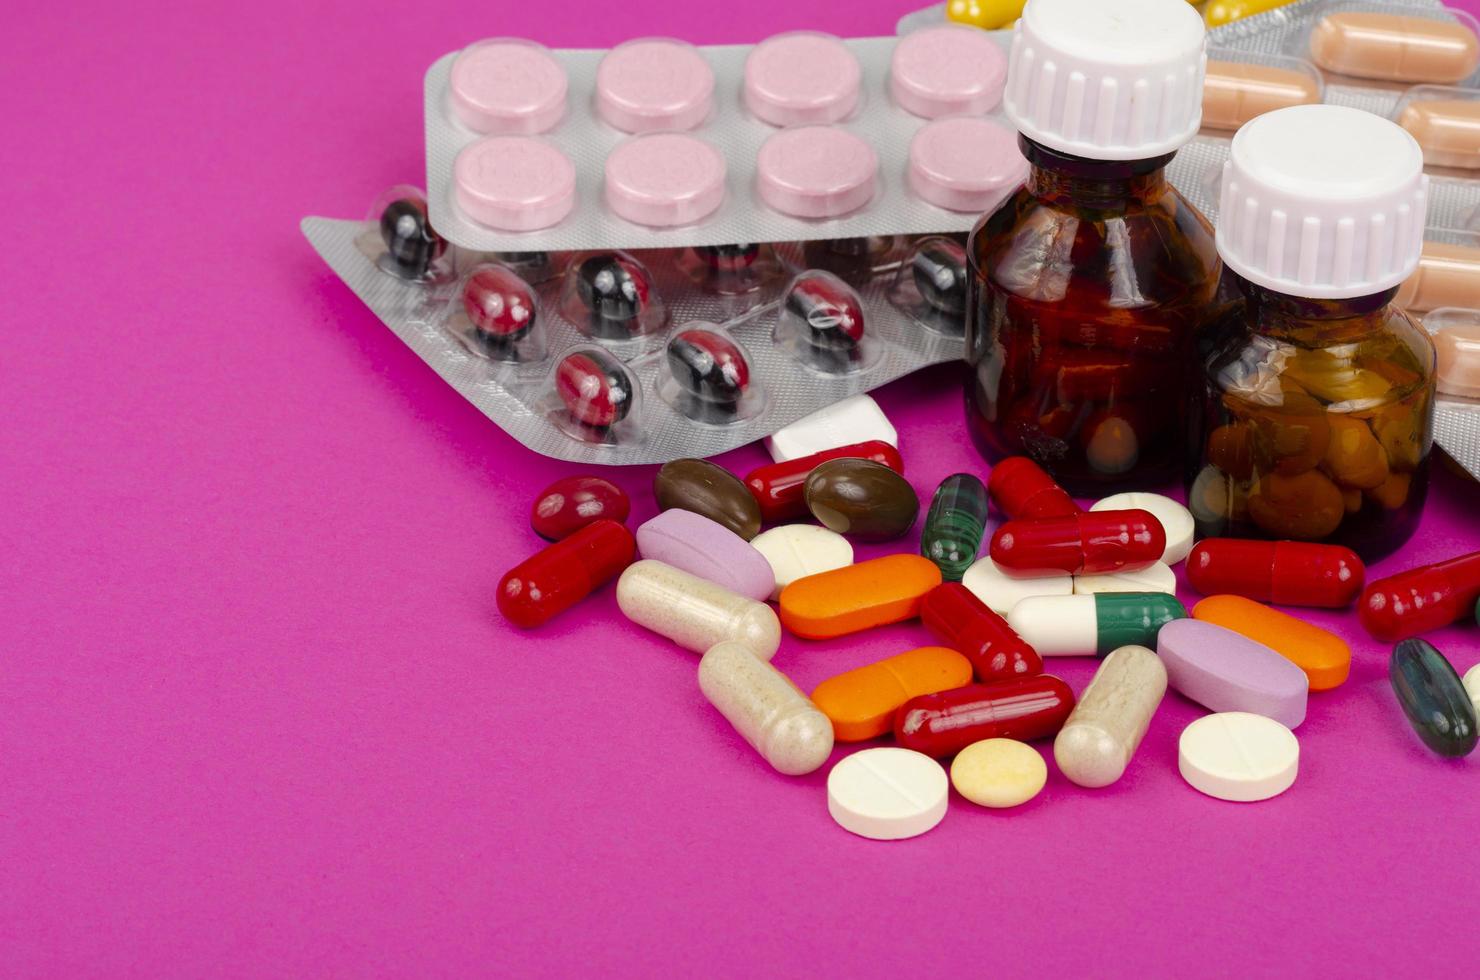 malattia e trattamento. concetto di medicina. farmaci e imballaggi su sfondo luminoso. foto in studio